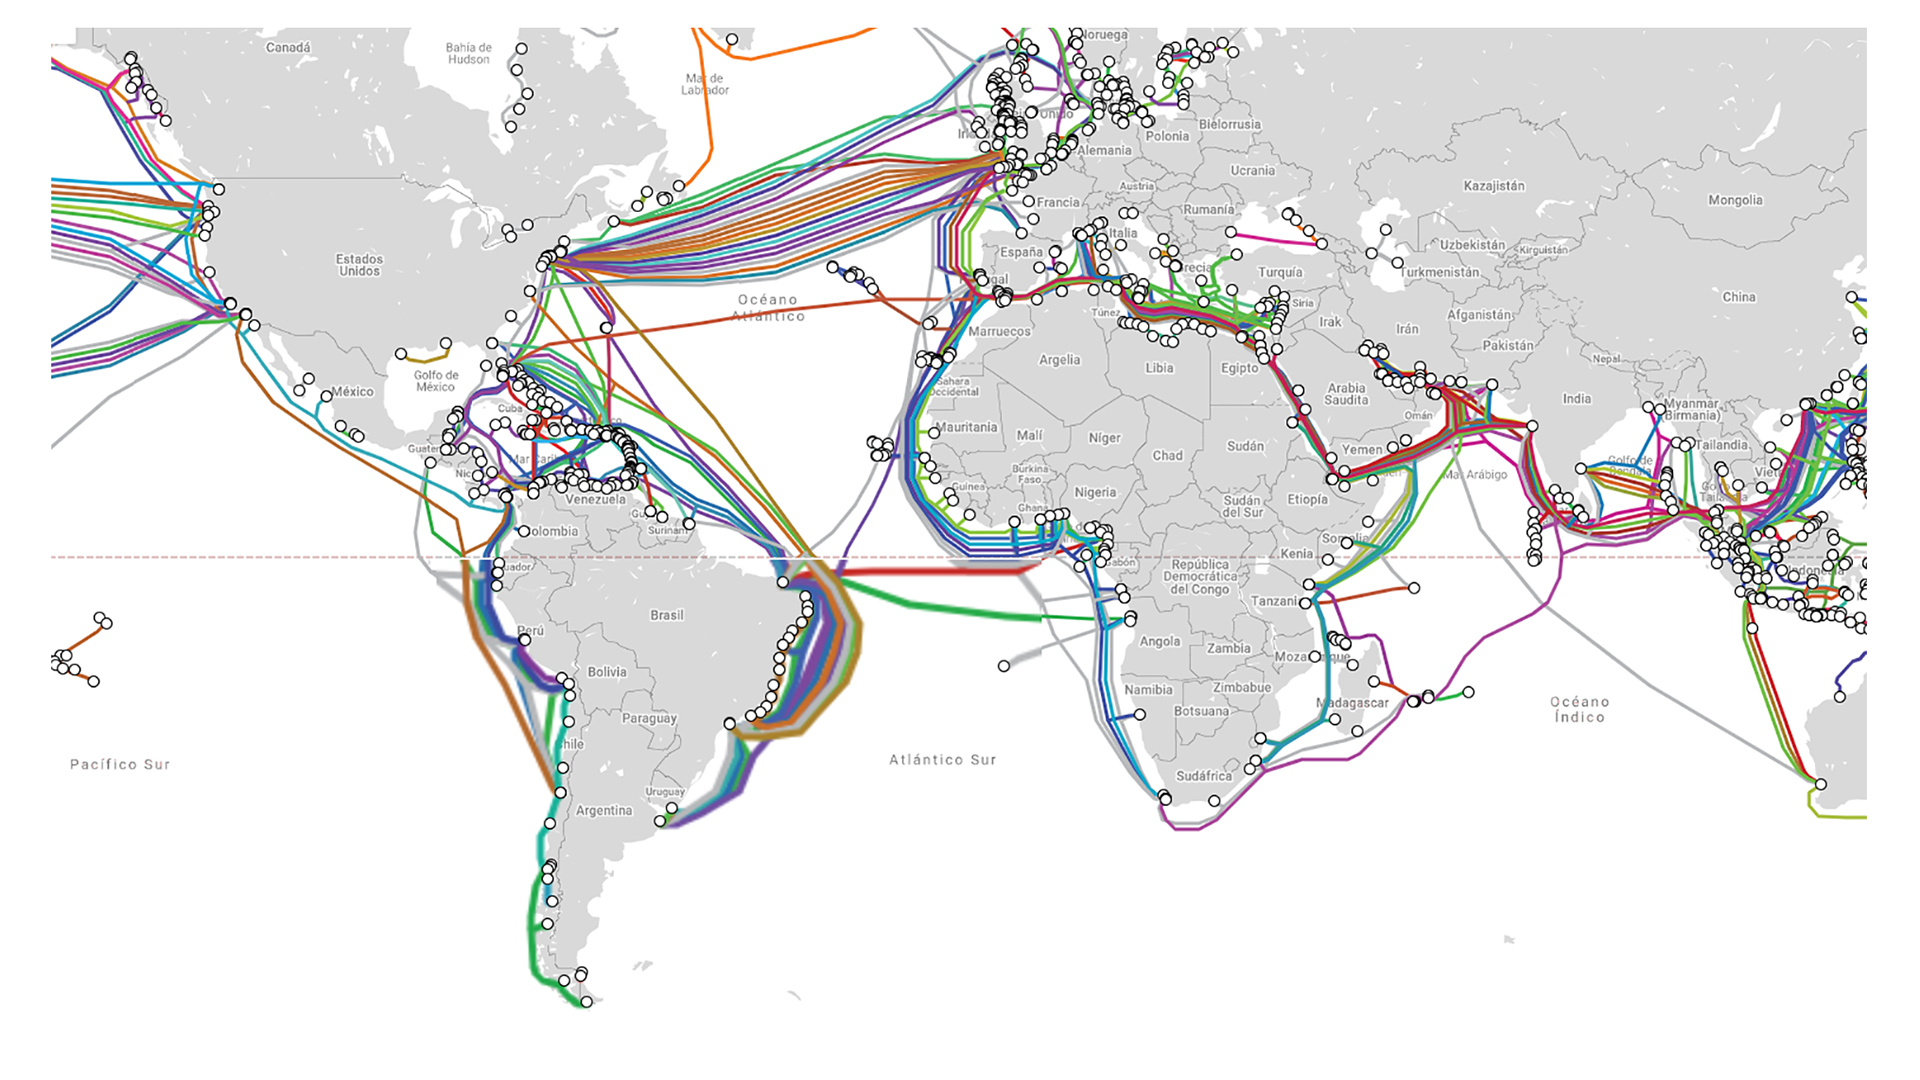 Red de cables submarinos de fibra óptica